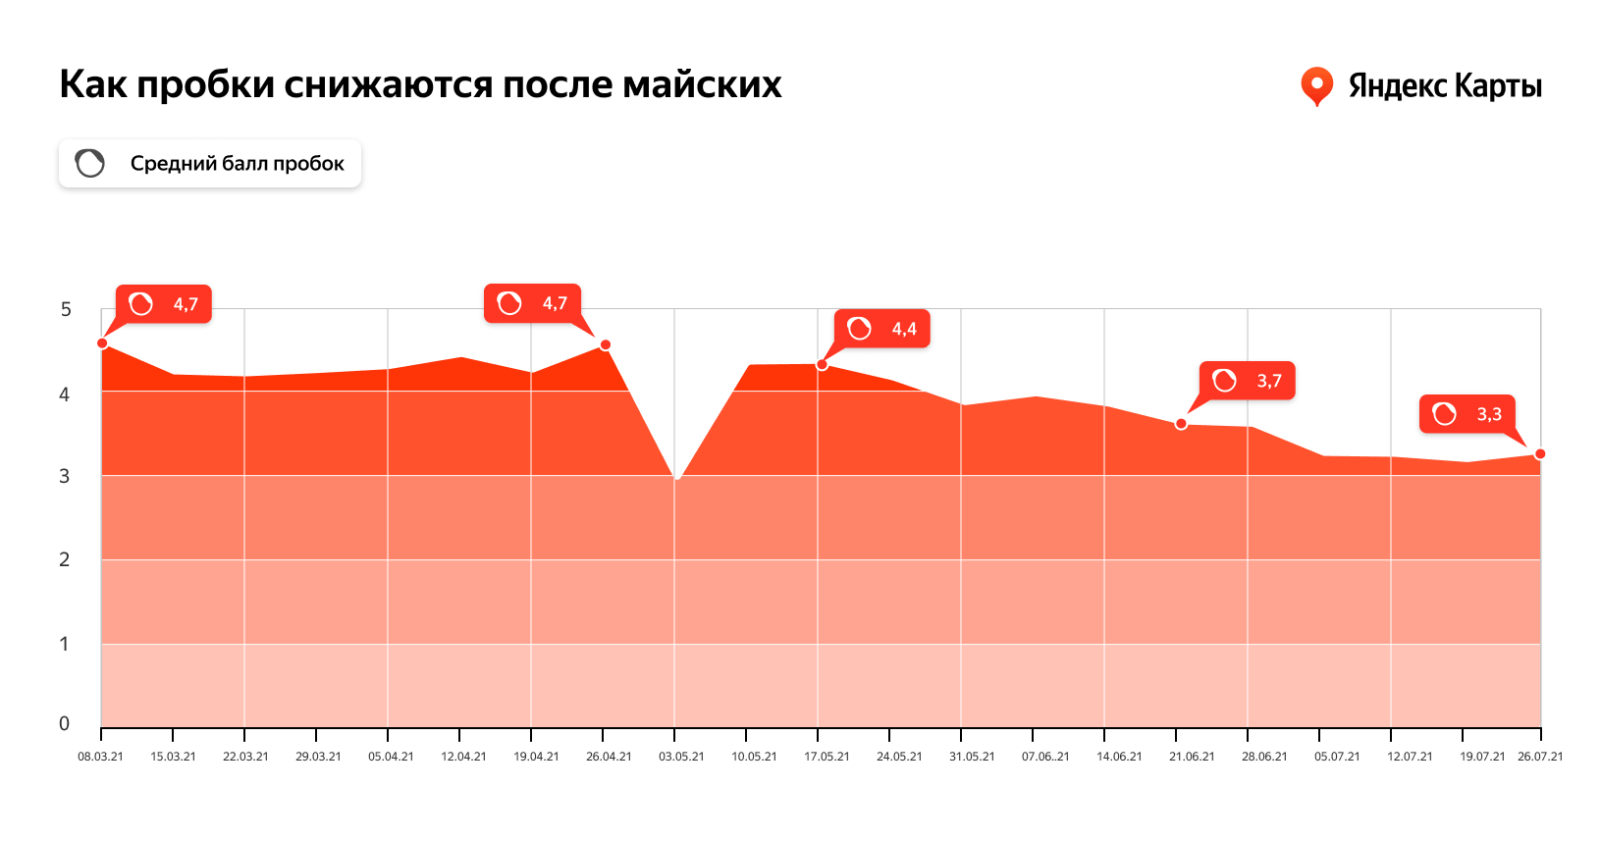 Яндекс.Карты рассказали, что пробки в сентябре будут возвращаться медленно (orig 2)